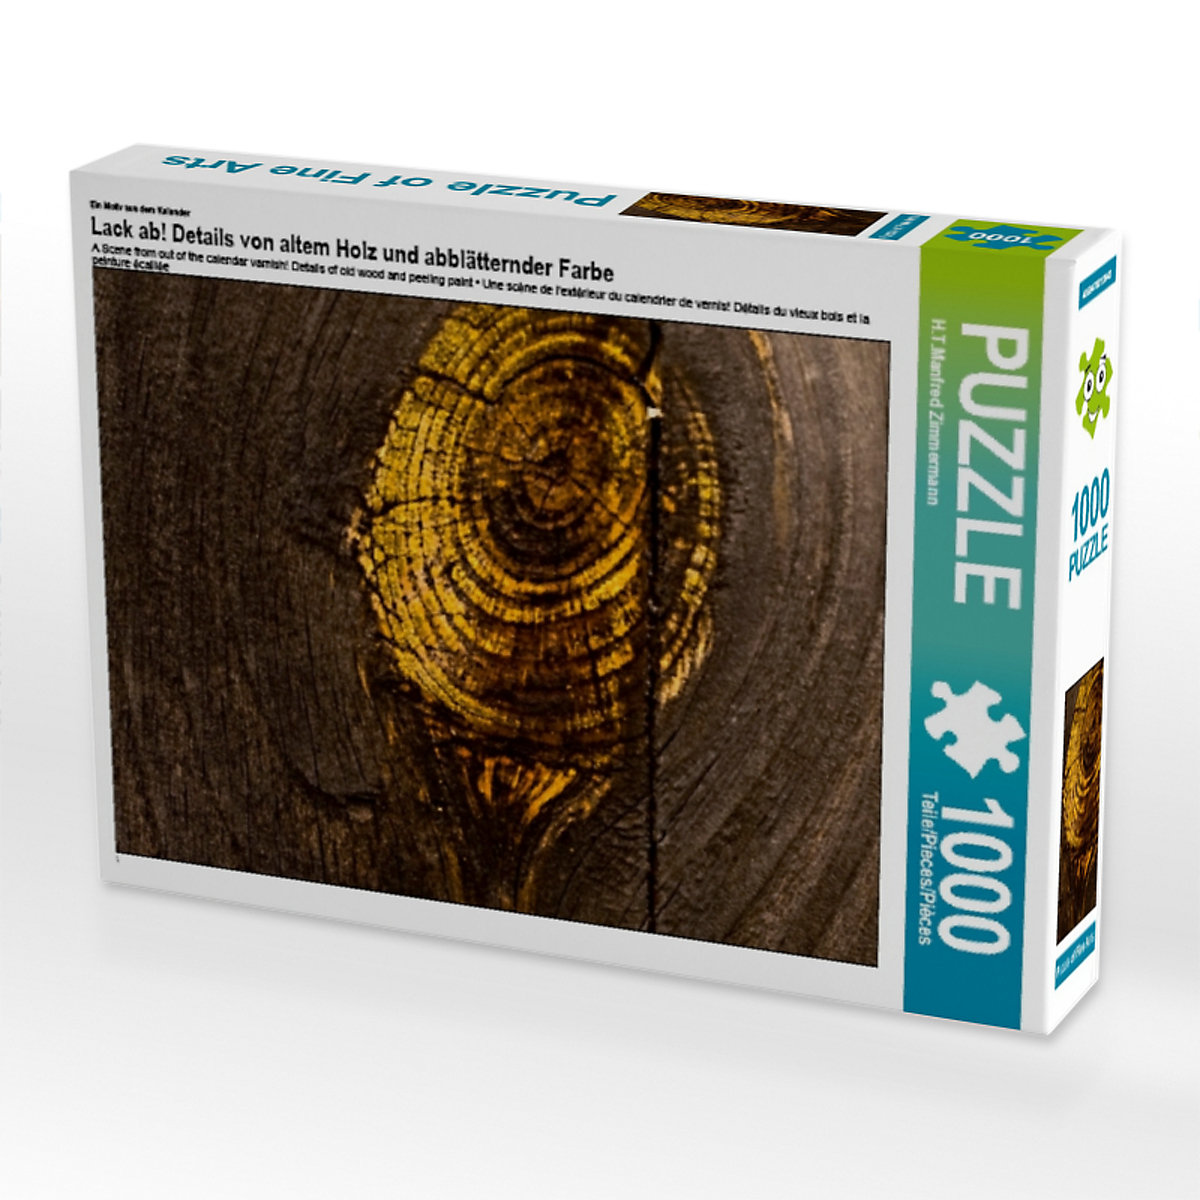 CALVENDO® Puzzle CALVENDO Puzzle Lack ab! Details von altem Holz und abblätternder Farbe 1000 Teile Foto-Puzzle für glückliche Stunden